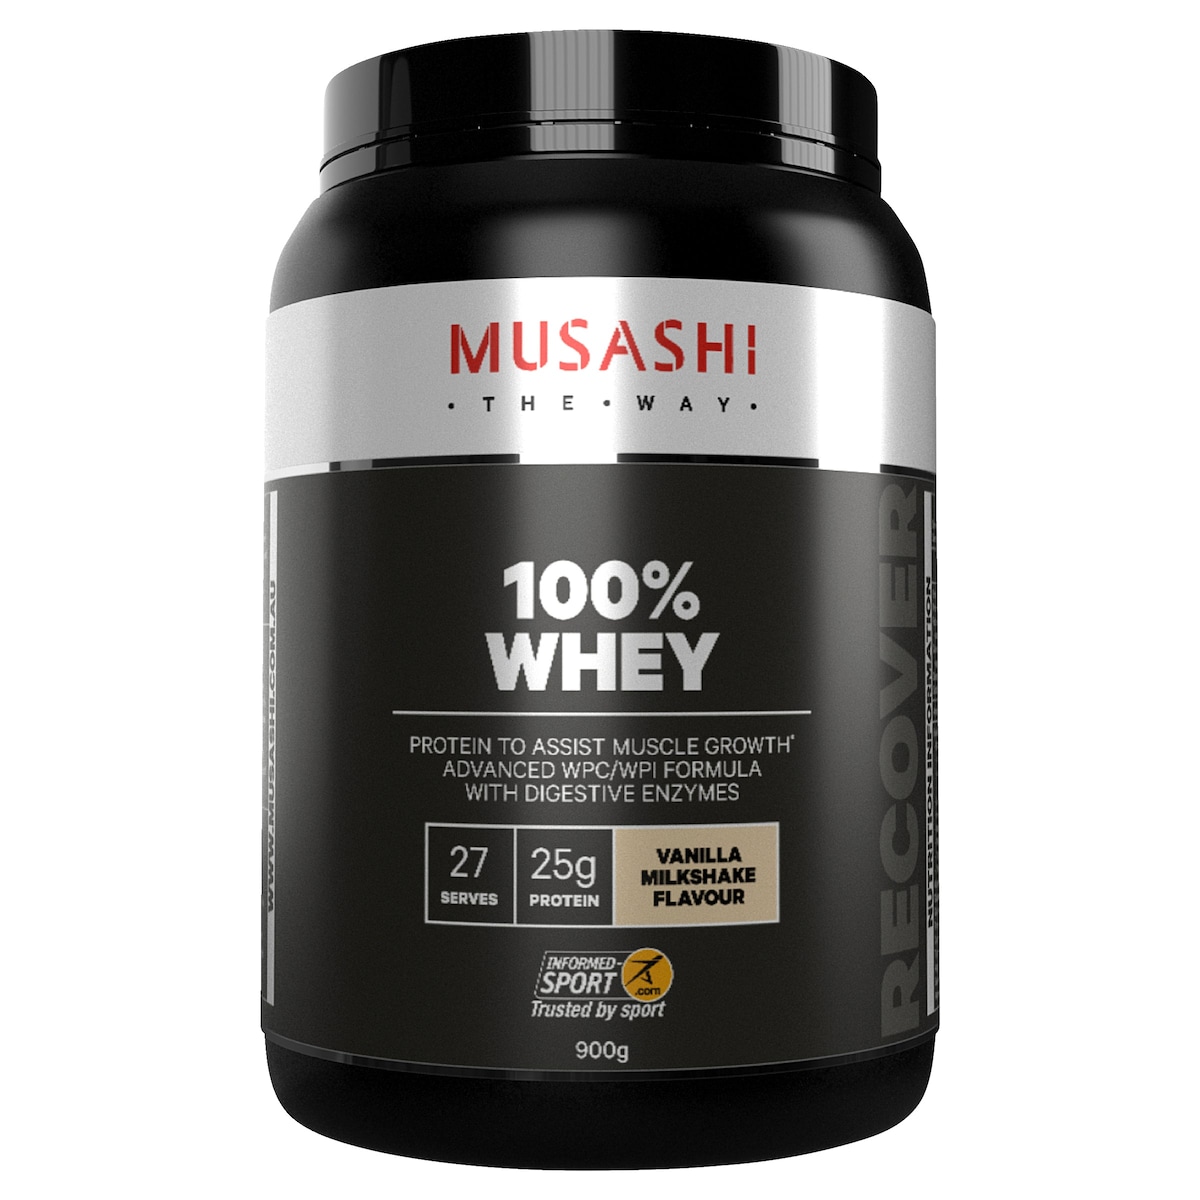 Musashi 100% Whey Protein Powder Vanilla Milkshake 900g Australia